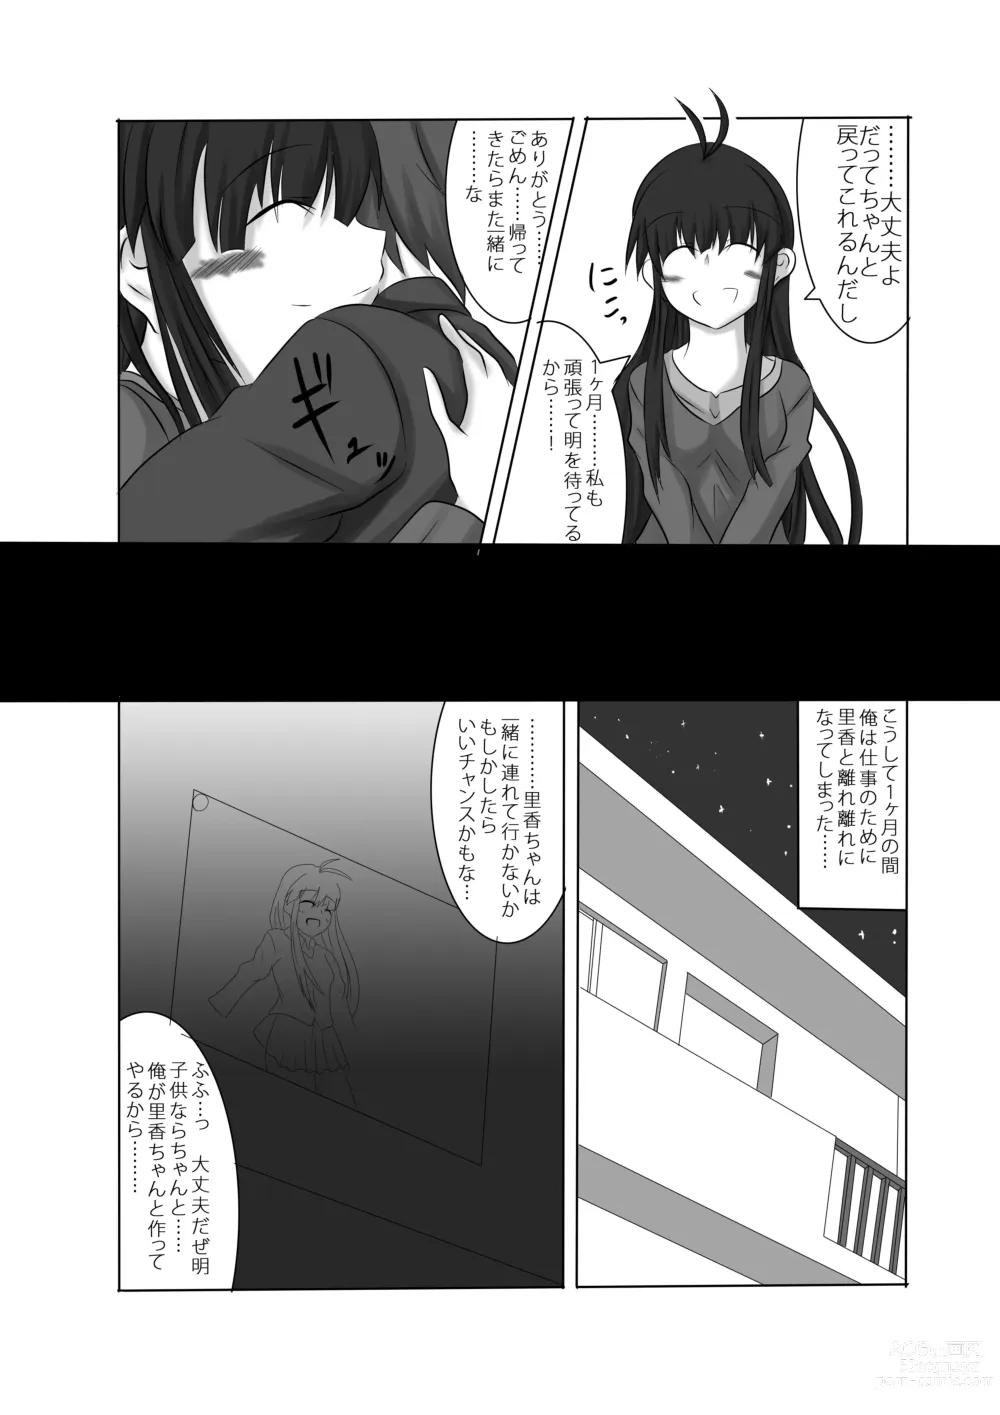 Page 9 of doujinshi Anata no Ko o Haramu made